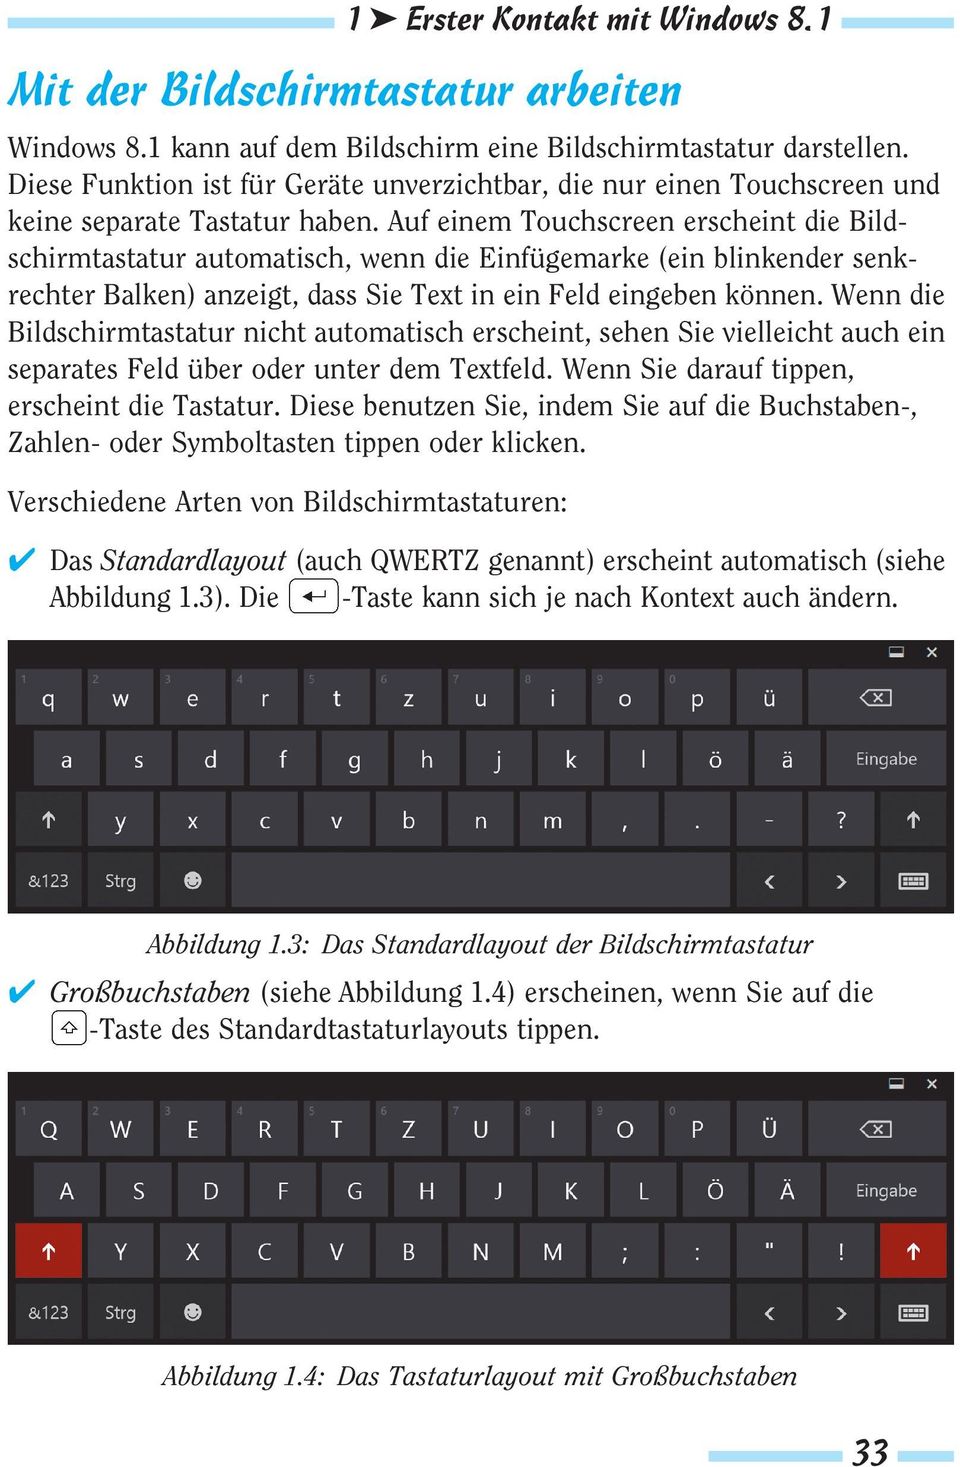 Auf einem Touchscreen erscheint die Bildschirmtastatur automatisch, wenn die Einfügemarke (ein blinkender senkrechter Balken) anzeigt, dass Sie Text in ein Feld eingeben können.